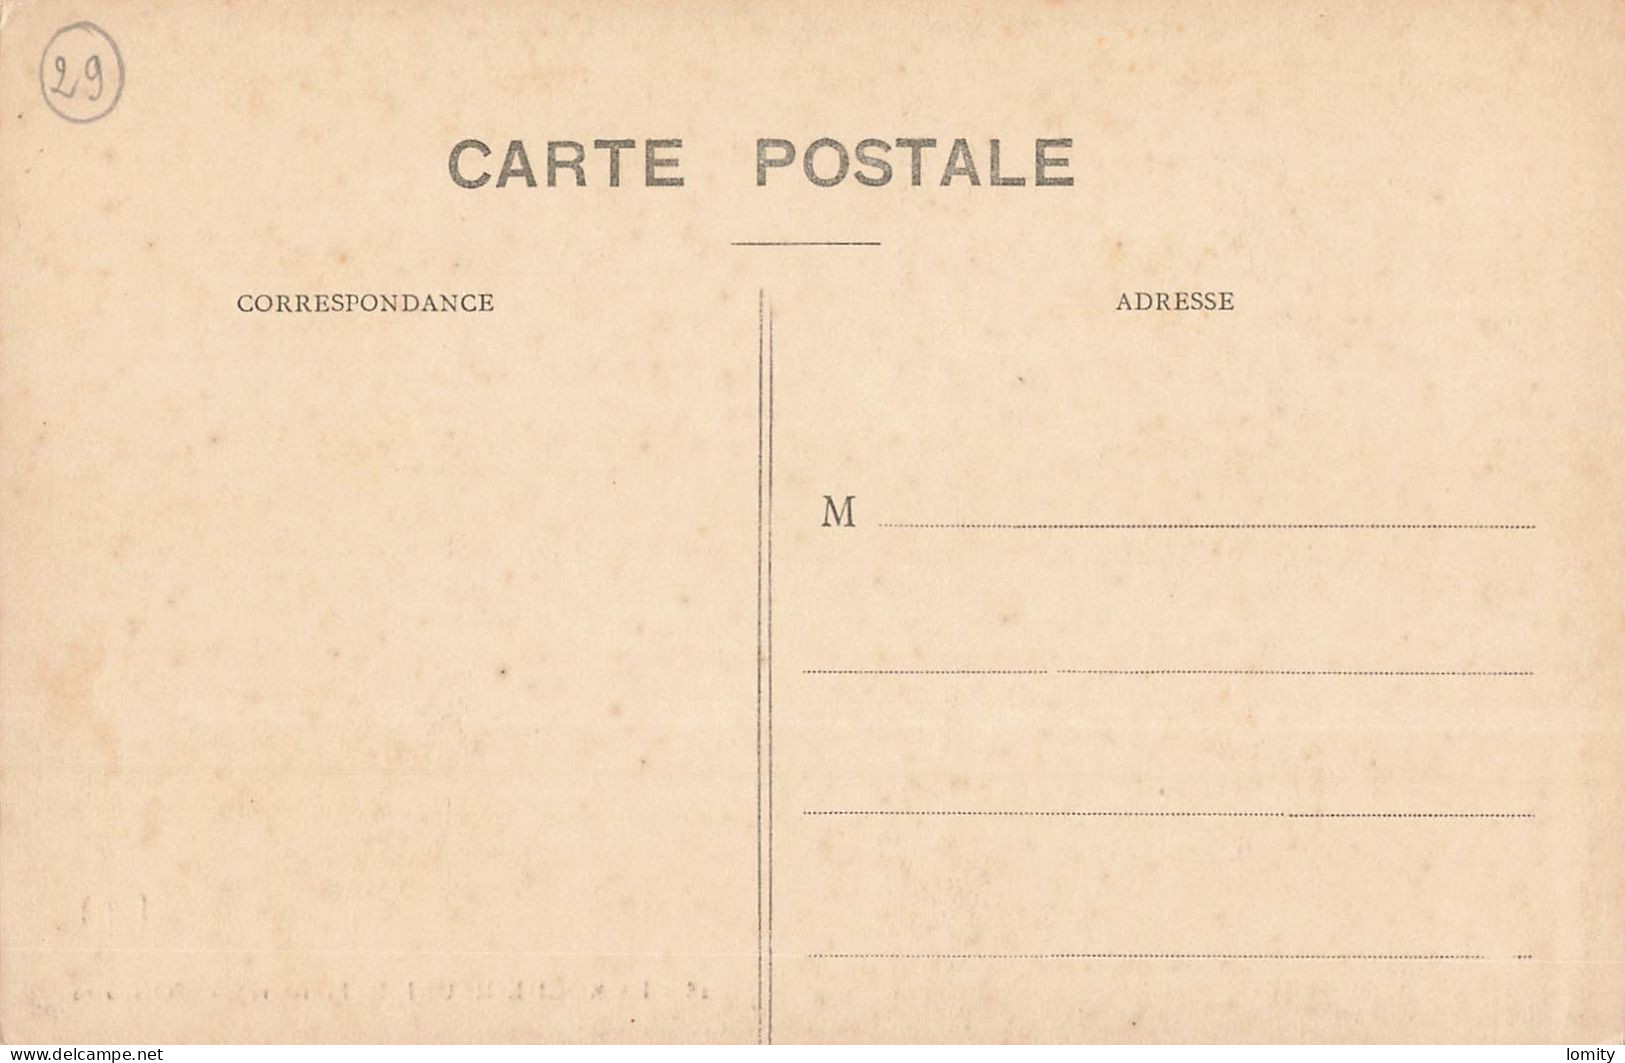 déstockage lot 14 CPA cartes postales La Roche Maurice Bretagne église ossuaire porche jubé vitrail ruines chateau